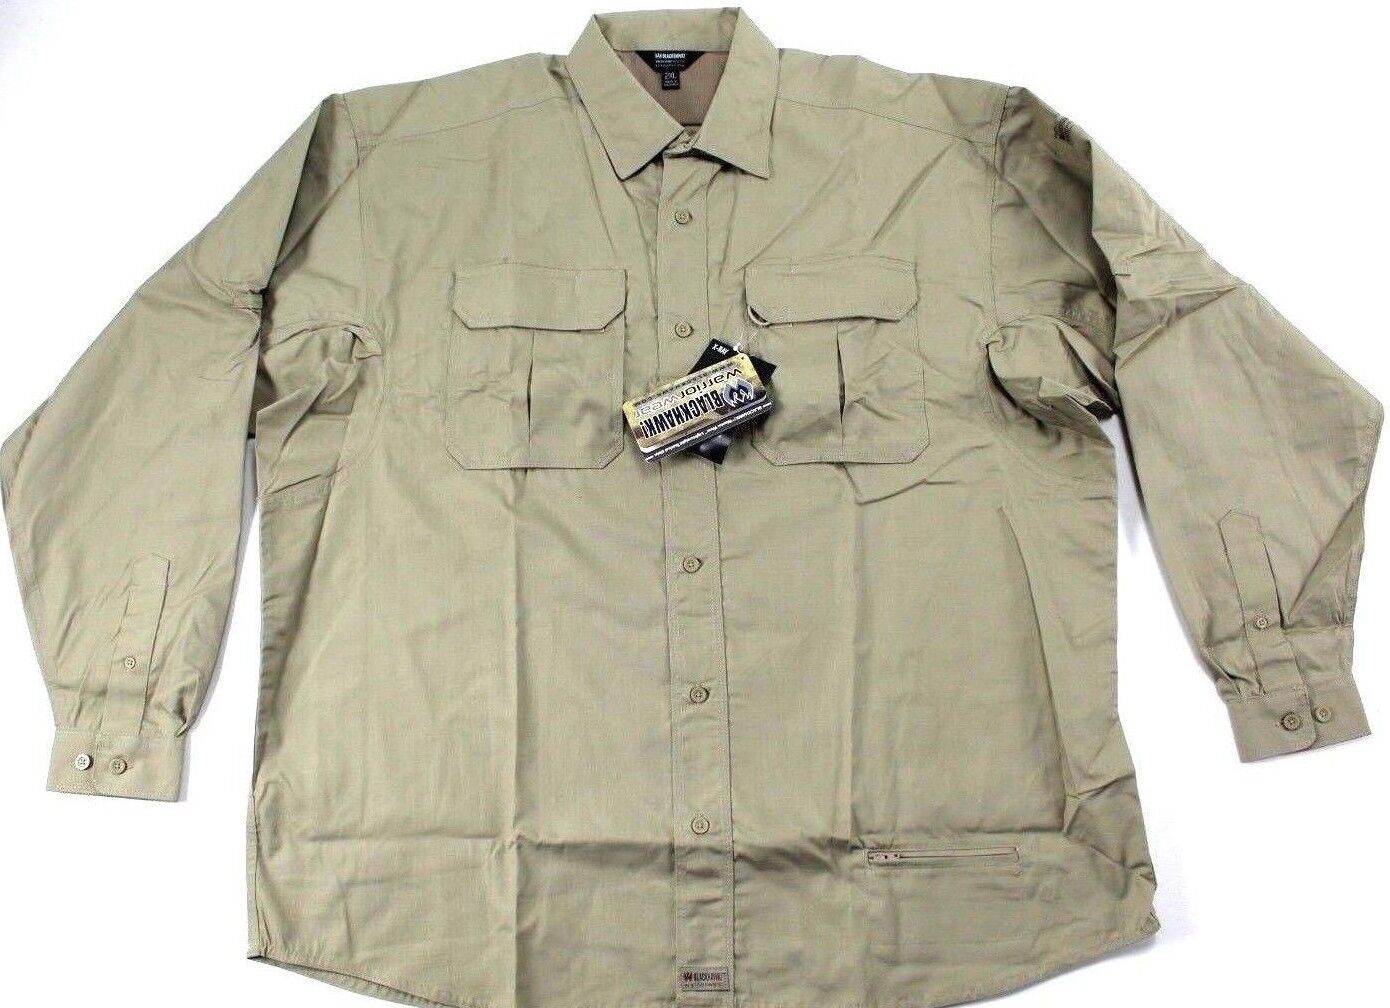 Men's 2XL Light Weight Tactical Shirt Khaki Long Sleeve BLACKHAWK (R221108pd)